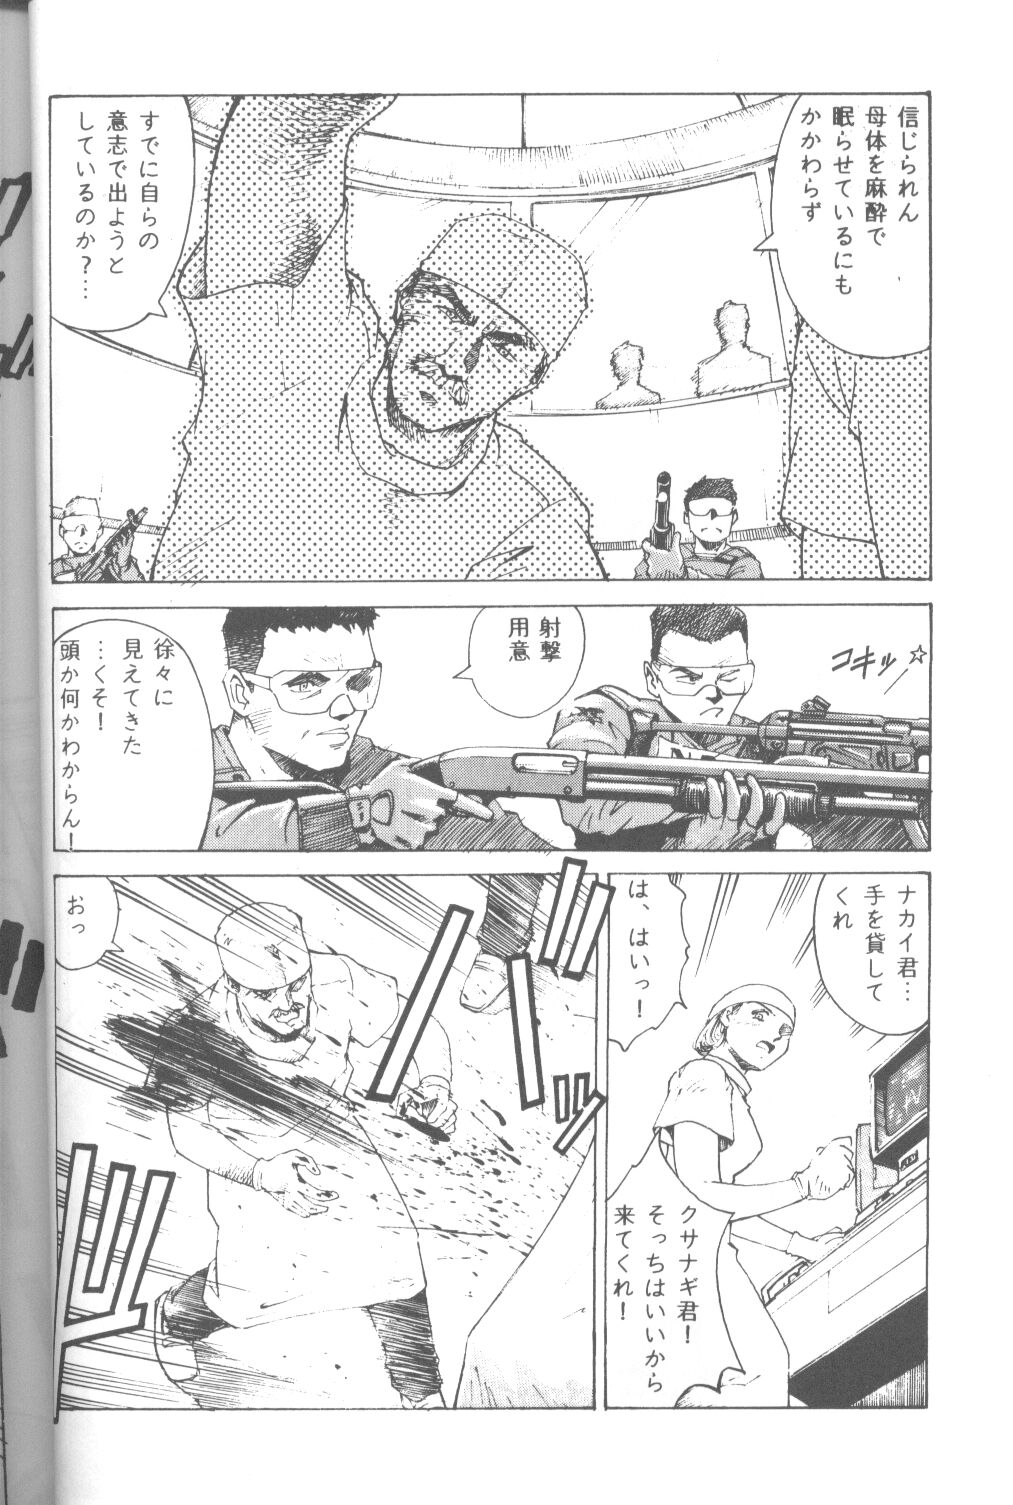 [Takahiro Kutugi] Friends Yes We're (Evangelion) page 45 full